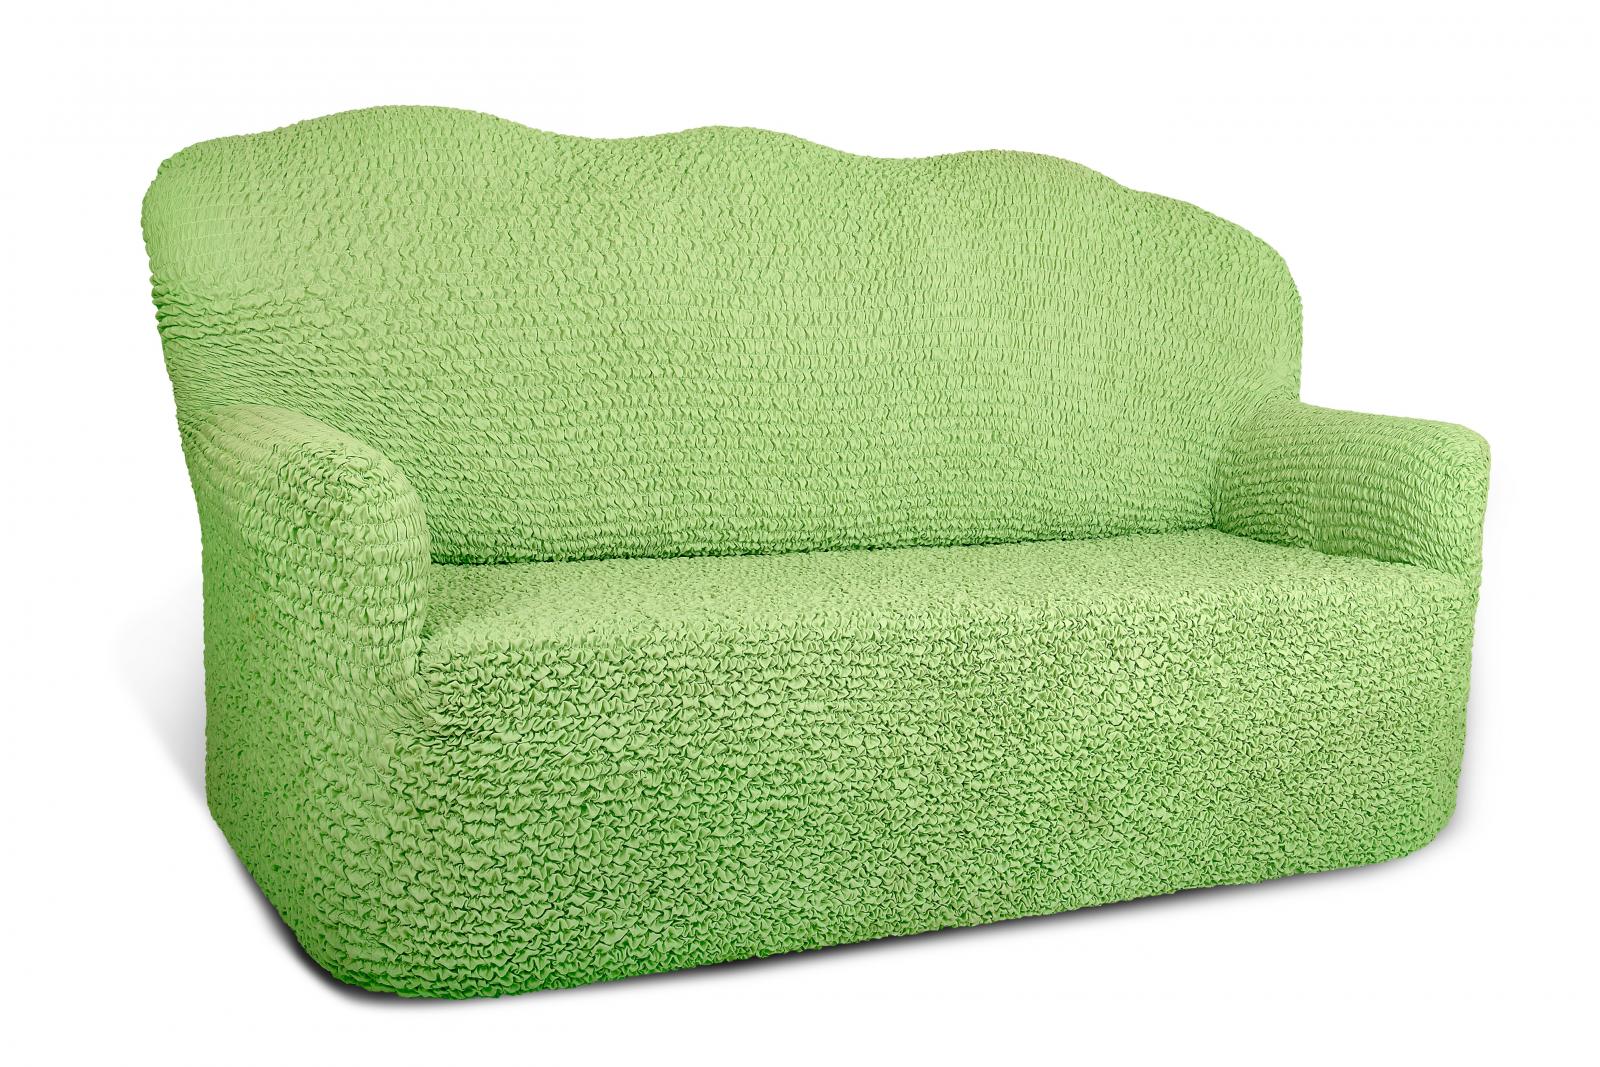 Спб озон диваны. Еврочехол на диван микрофибра зеленый. Чехол на 3-х местный диван Еврочехол. Чехол на 2-х местный диван Еврочехол. Чехлы для мягкой мебели универсальные.